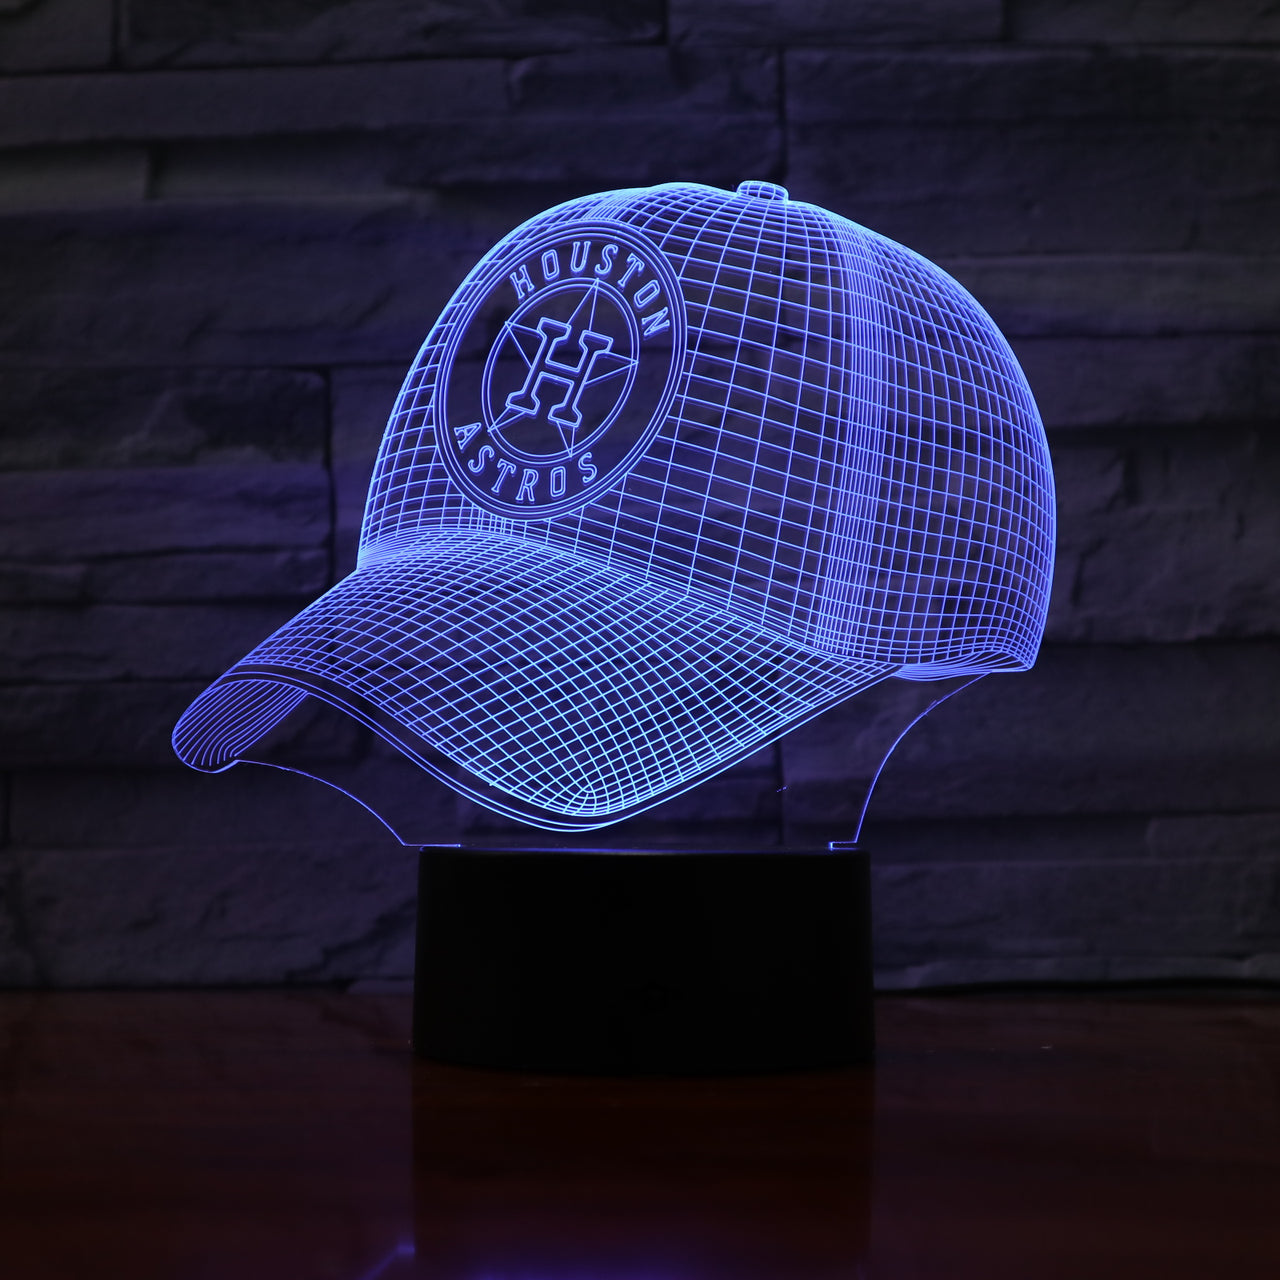 MLB HOUSTON ASTROS 3D LED LIGHT LAMP